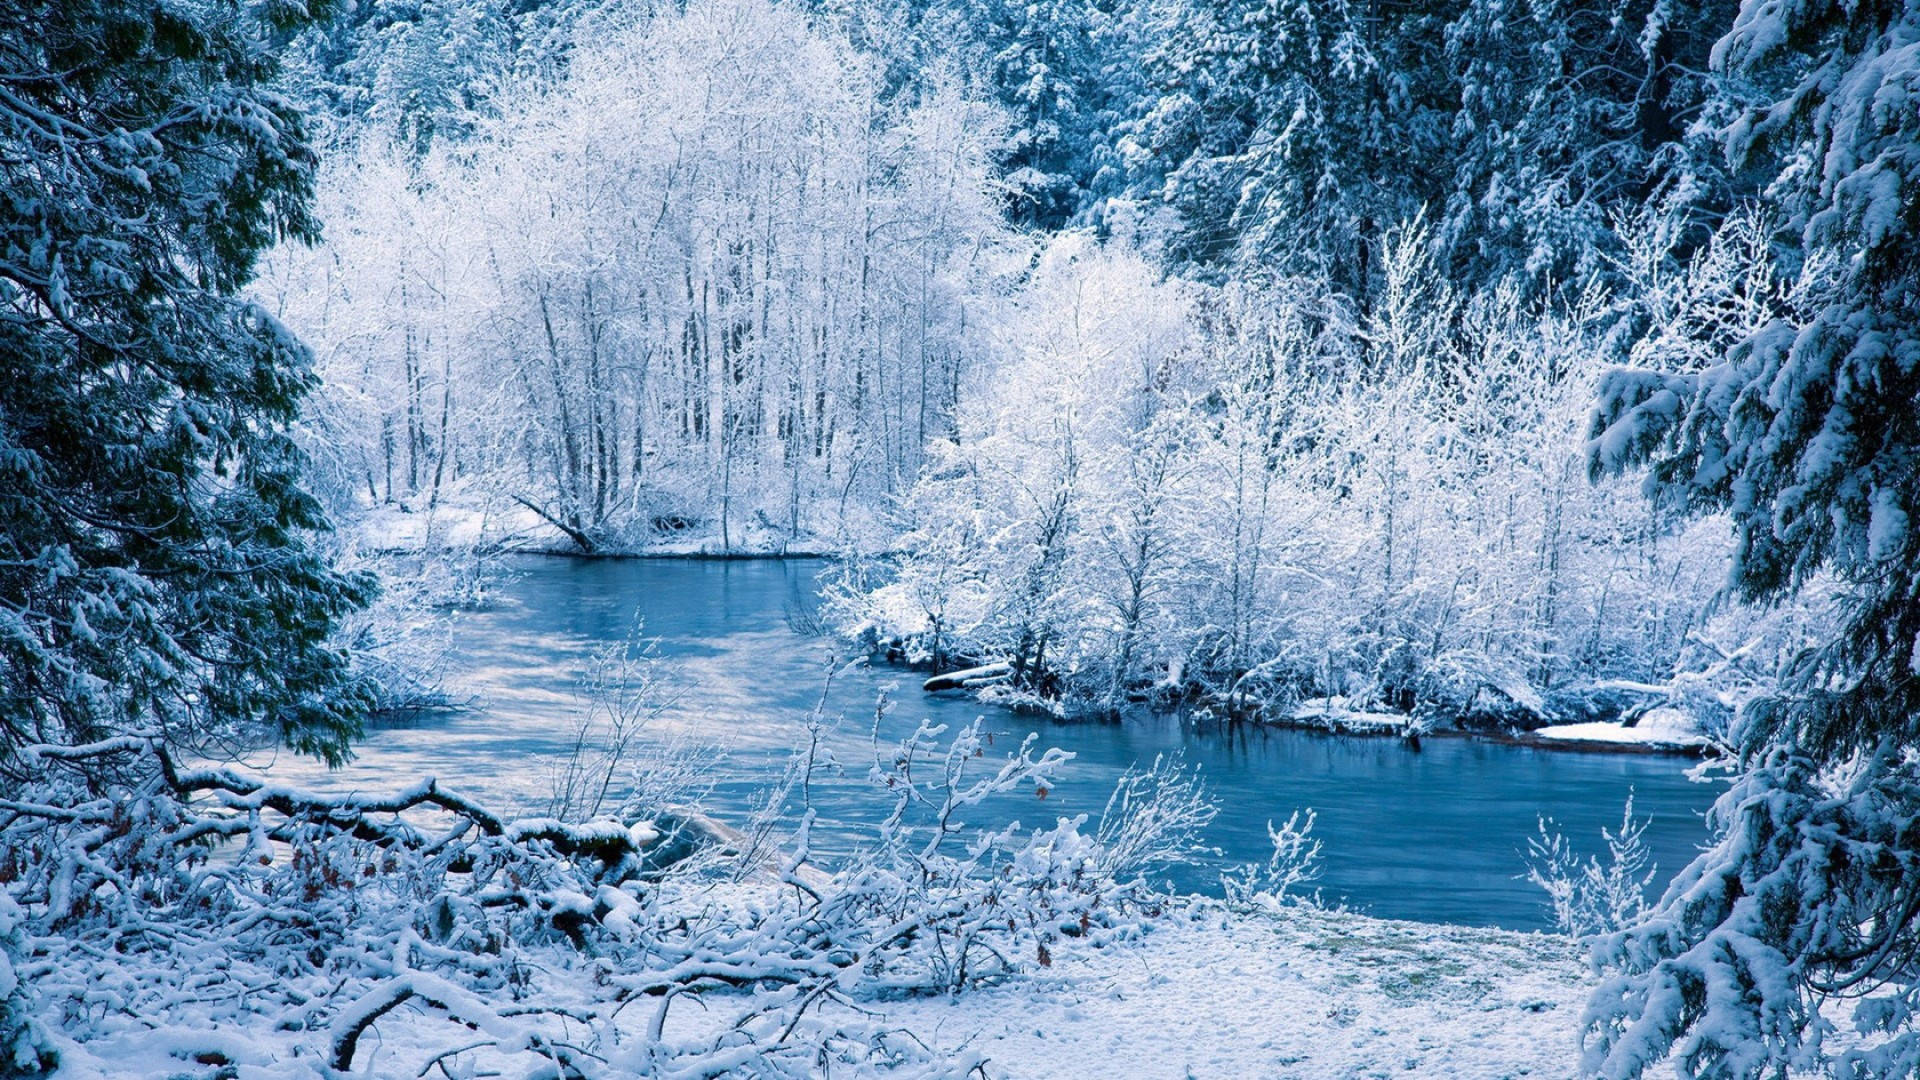 Schönesbild Von 1920x1080 Winter-desktop Wallpaper